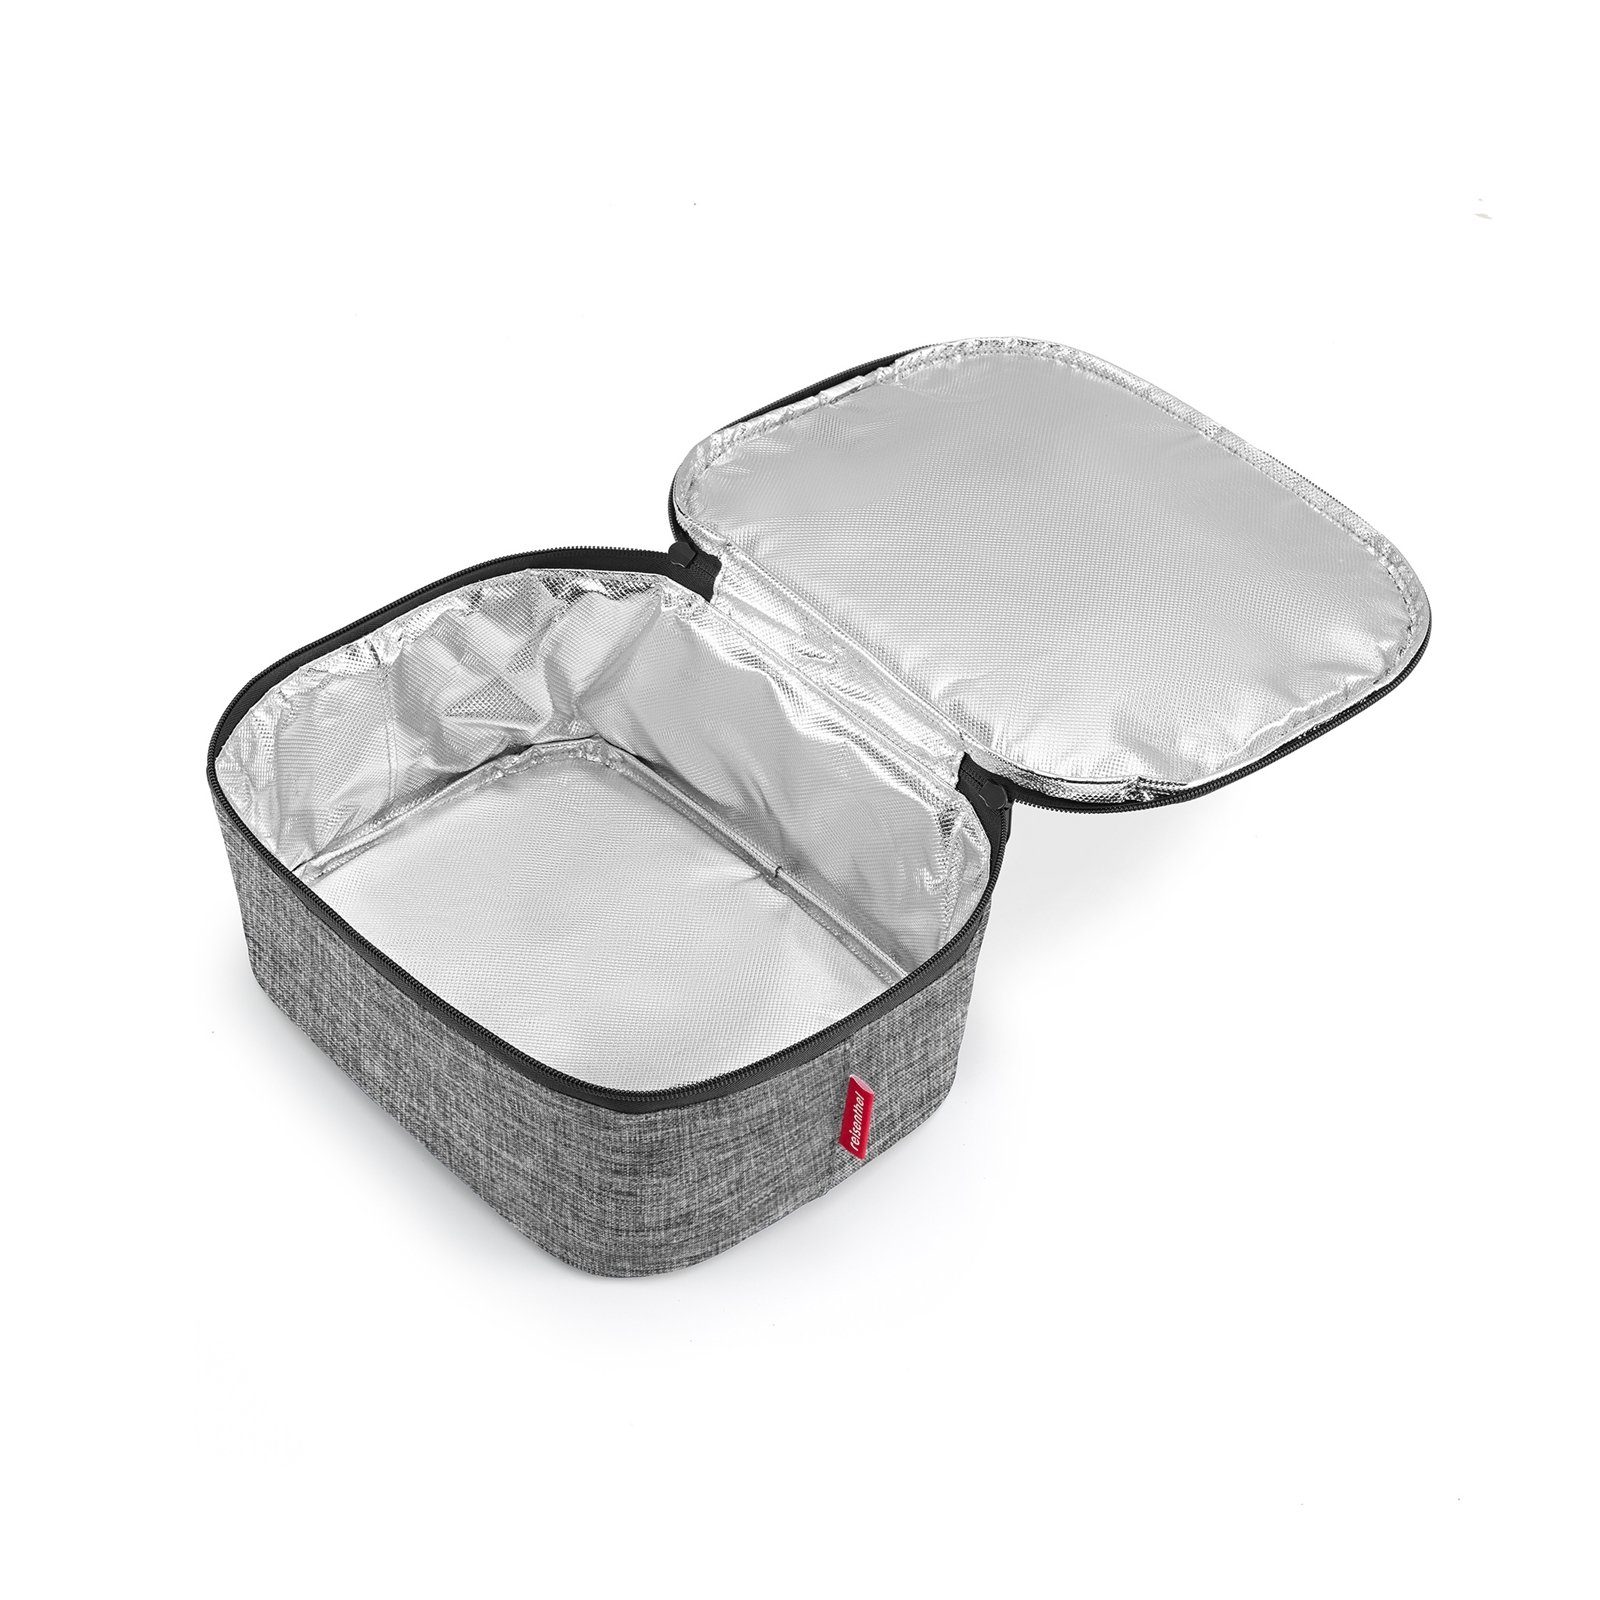 REISENTHEL® Einkaufsshopper Coolerbag M silver l twist 4.5 Kühltasche Pocket, Shopping